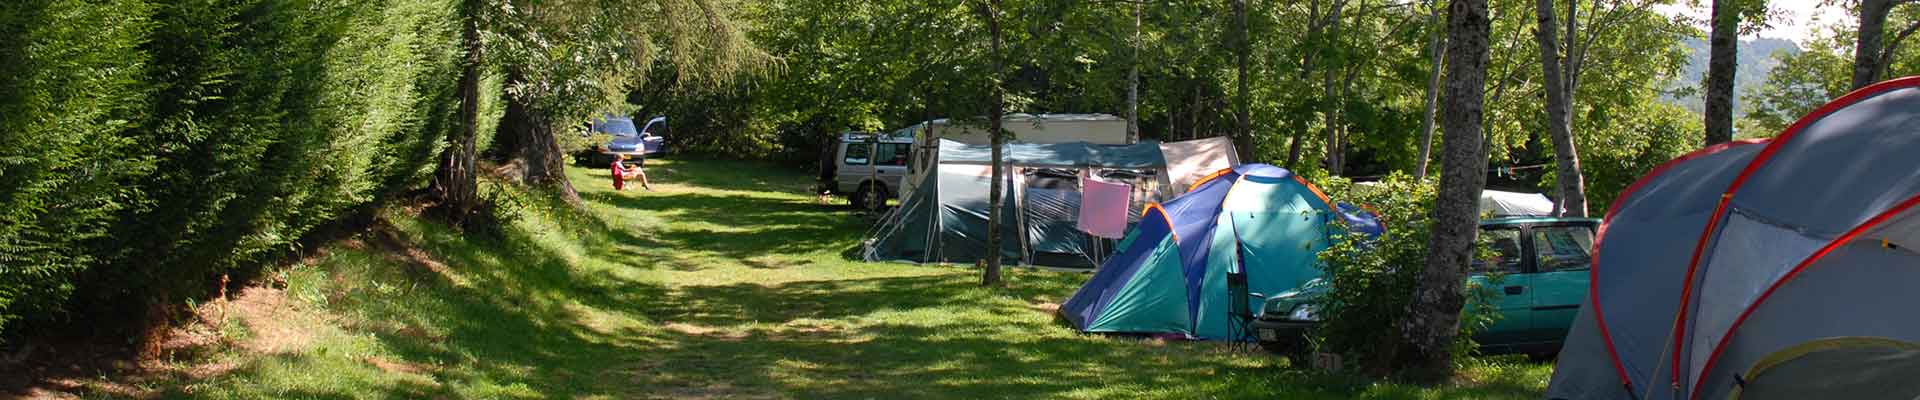 emplacement de camping Auvergne